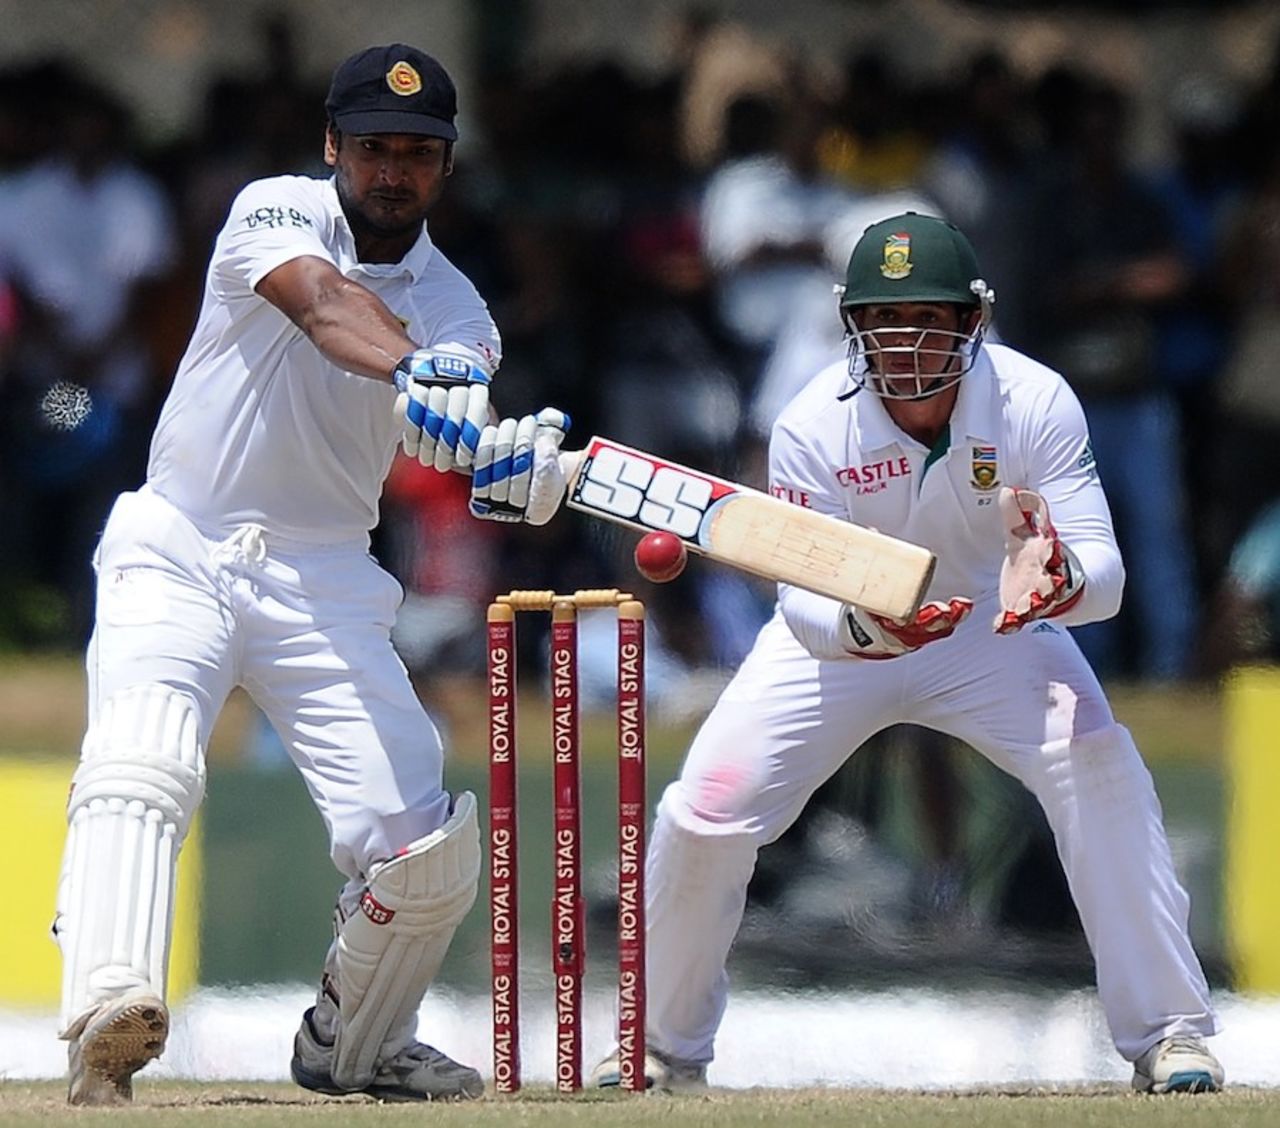 The shot that ended Kumar Sangakkara's innings, Sri Lanka v South Africa, 1st Test, Galle, 5th day, July 20, 2014